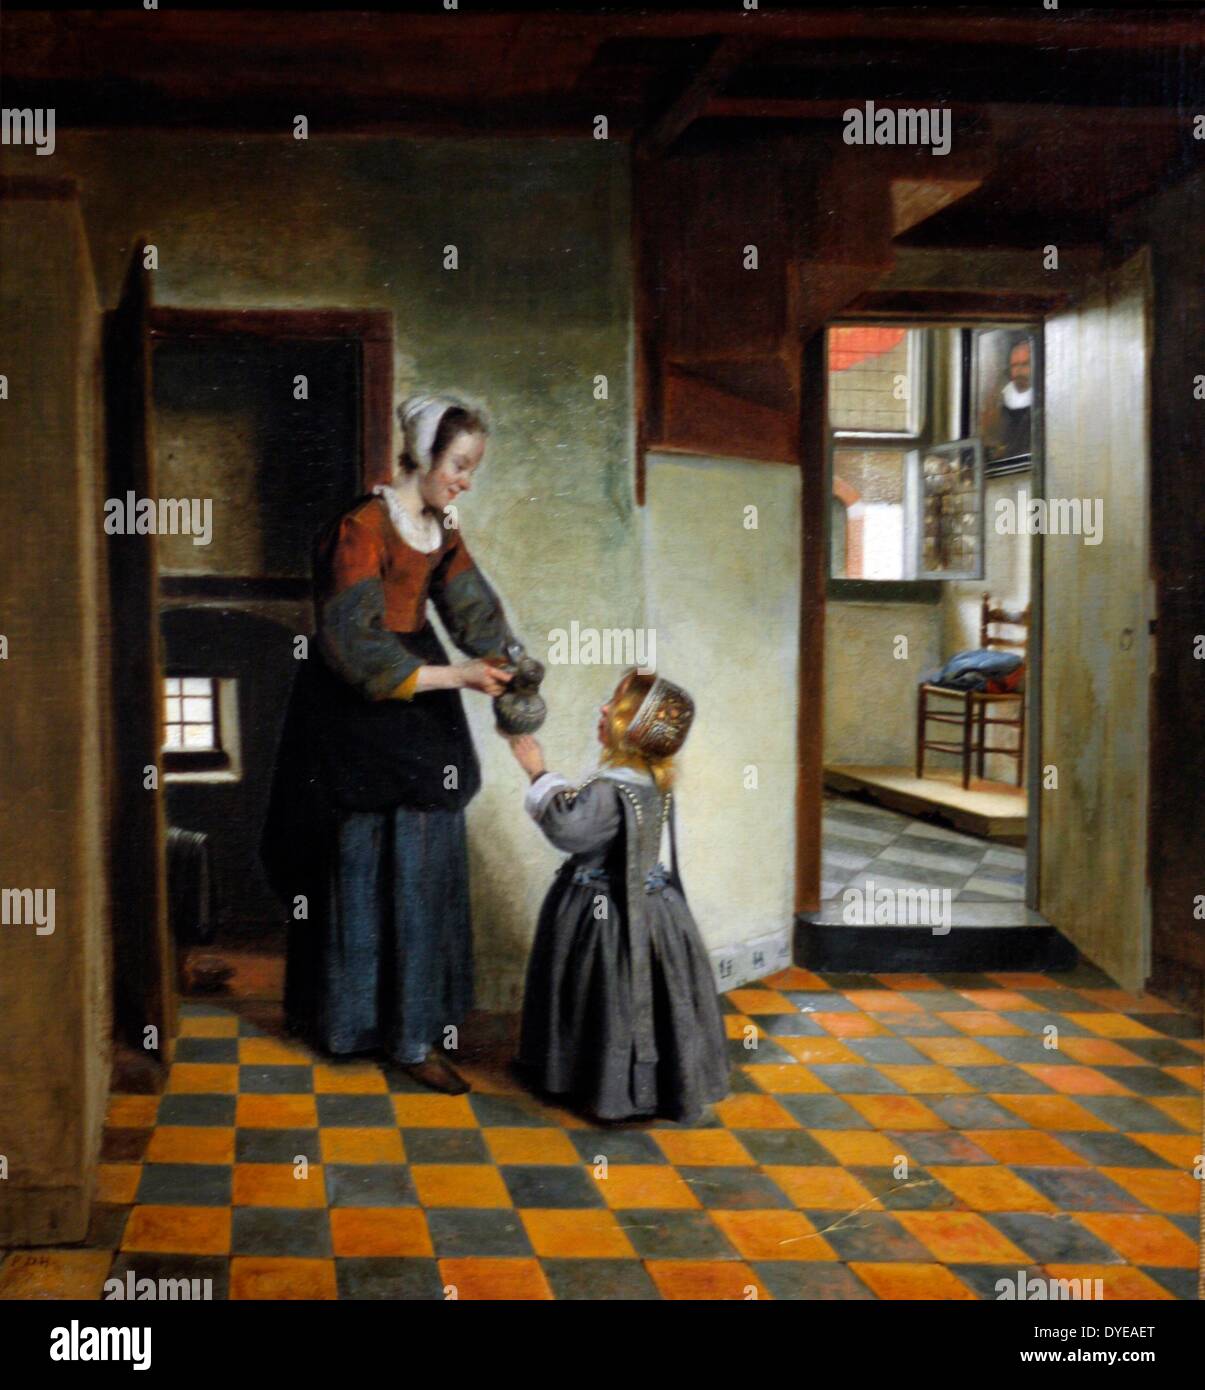 Frau mit einem Kind in einem Vorratsraum, Pieter de Hooch (1629-ca 1683) Öl auf Leinwand C. 1656-1660. Pieter de Hooch arbeitete in Delft für ein paar Jahre zur gleichen Zeit wie Johannes Vermeer. Beide Künstler wurden von, wie man Licht und Raum machen fasziniert. Stockfoto